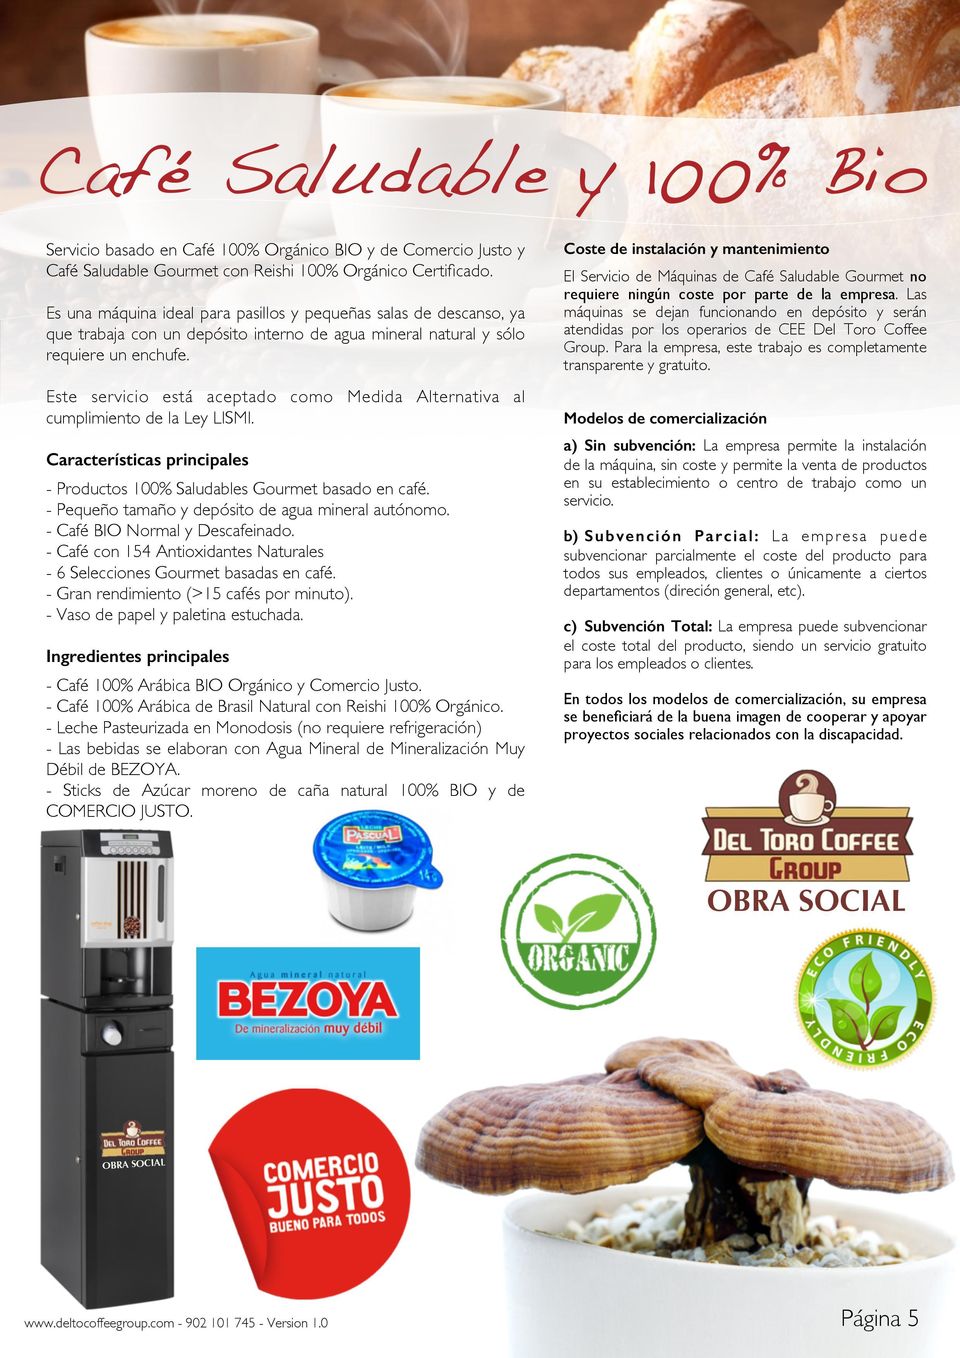 Este servicio está aceptado como Medida Alternativa al cumplimiento de la Ley LISMI. Características principales - Productos 100% Saludables Gourmet basado en café.